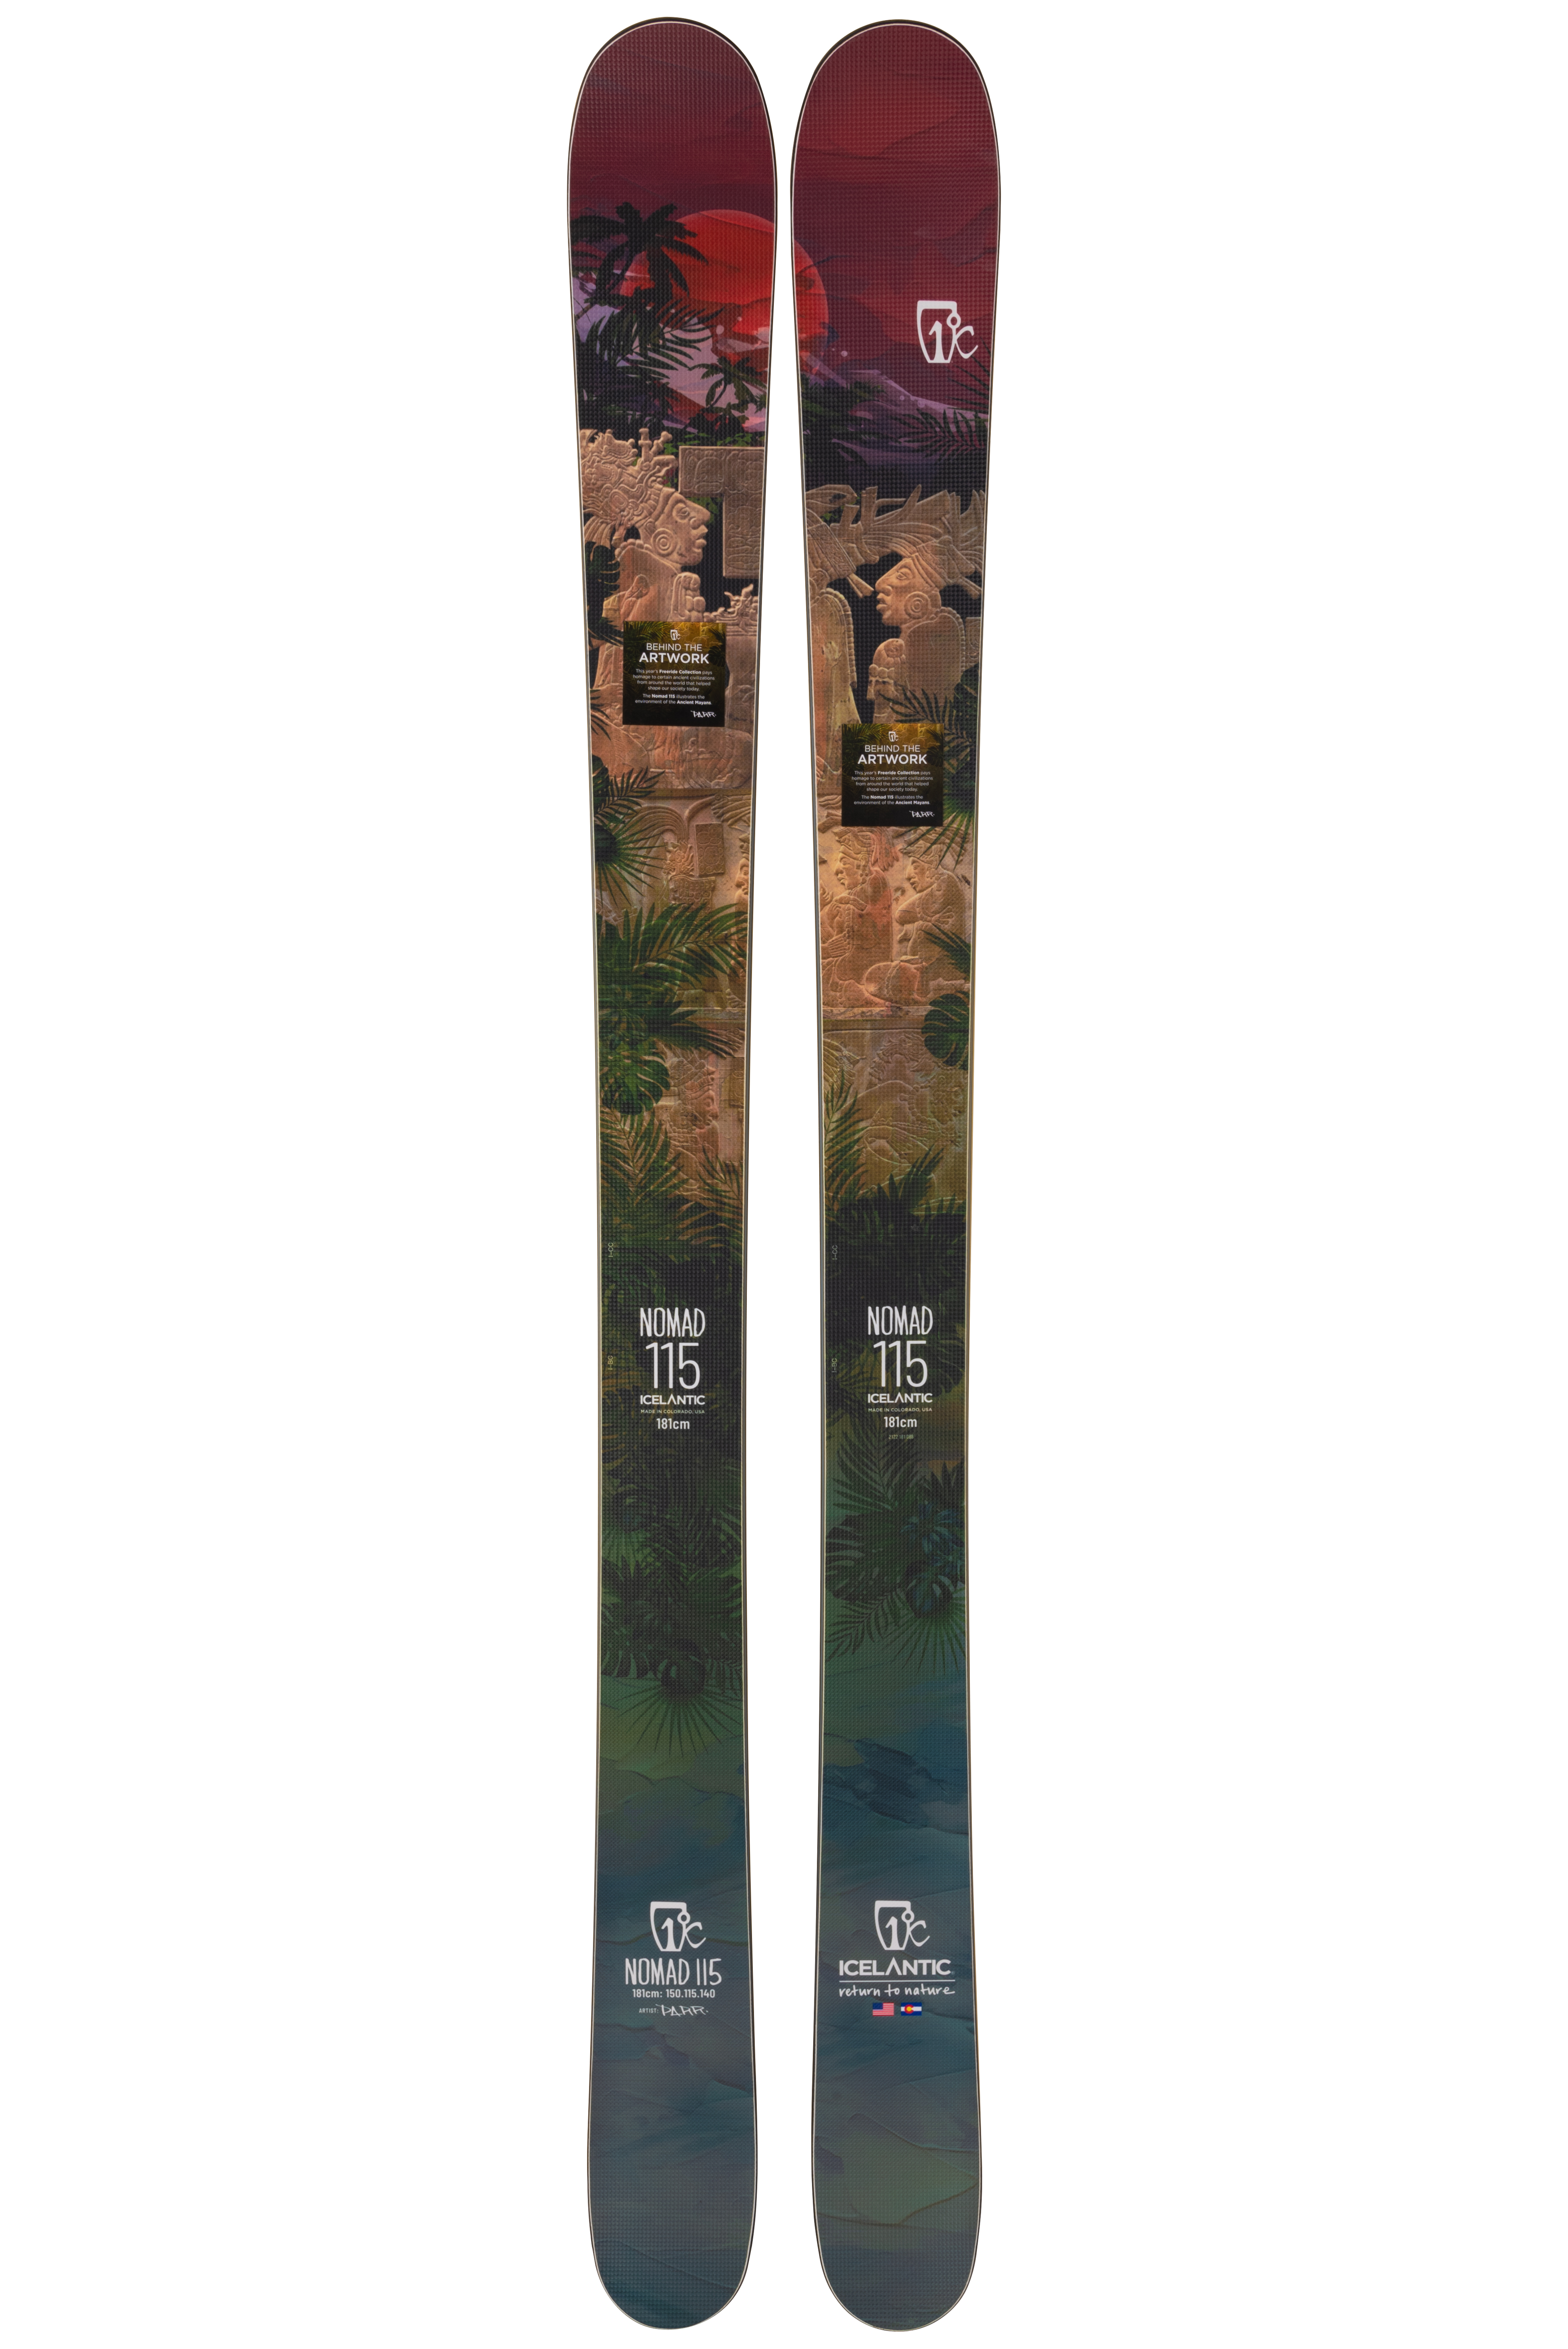 Купить лыжи Icelantic Nomad 115 2021/2022 181cm в Киеве